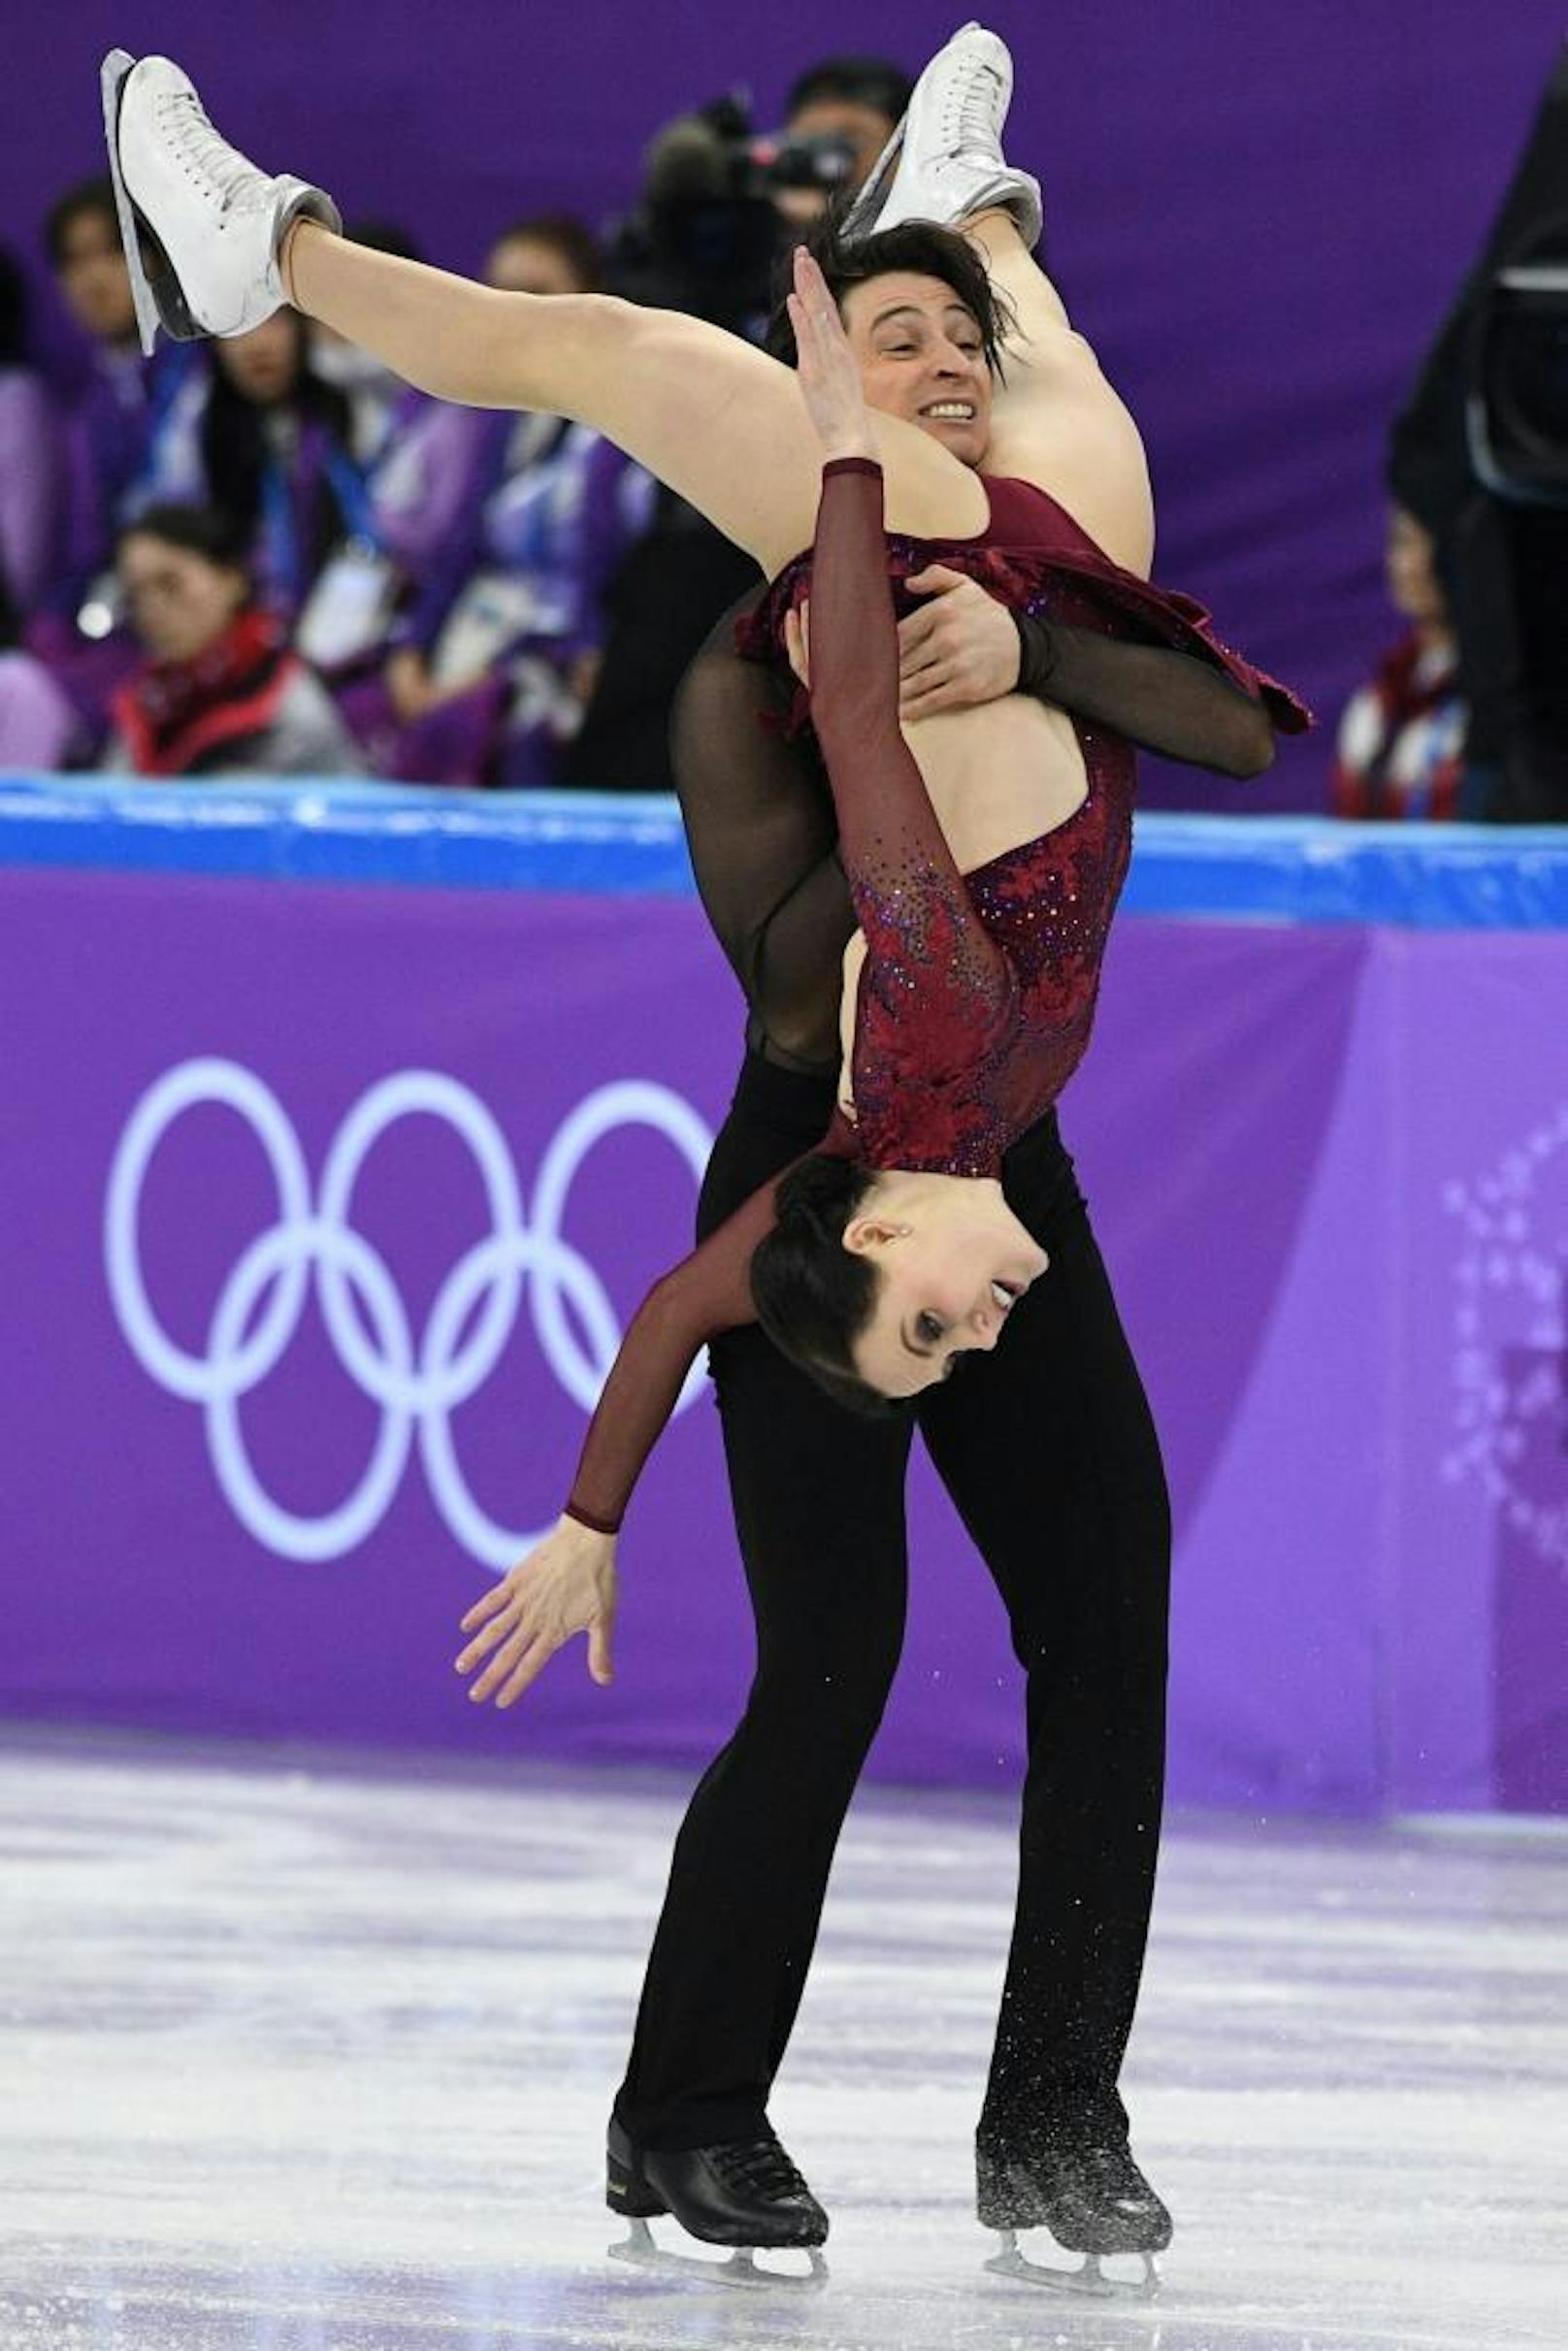 Andere Länder, andere Sitten. Das Eistanz-Paar Tessa Virtue und Scott Moir musste das Olympia-Programm ändern, weil eine Hebefigur zu sexy war.